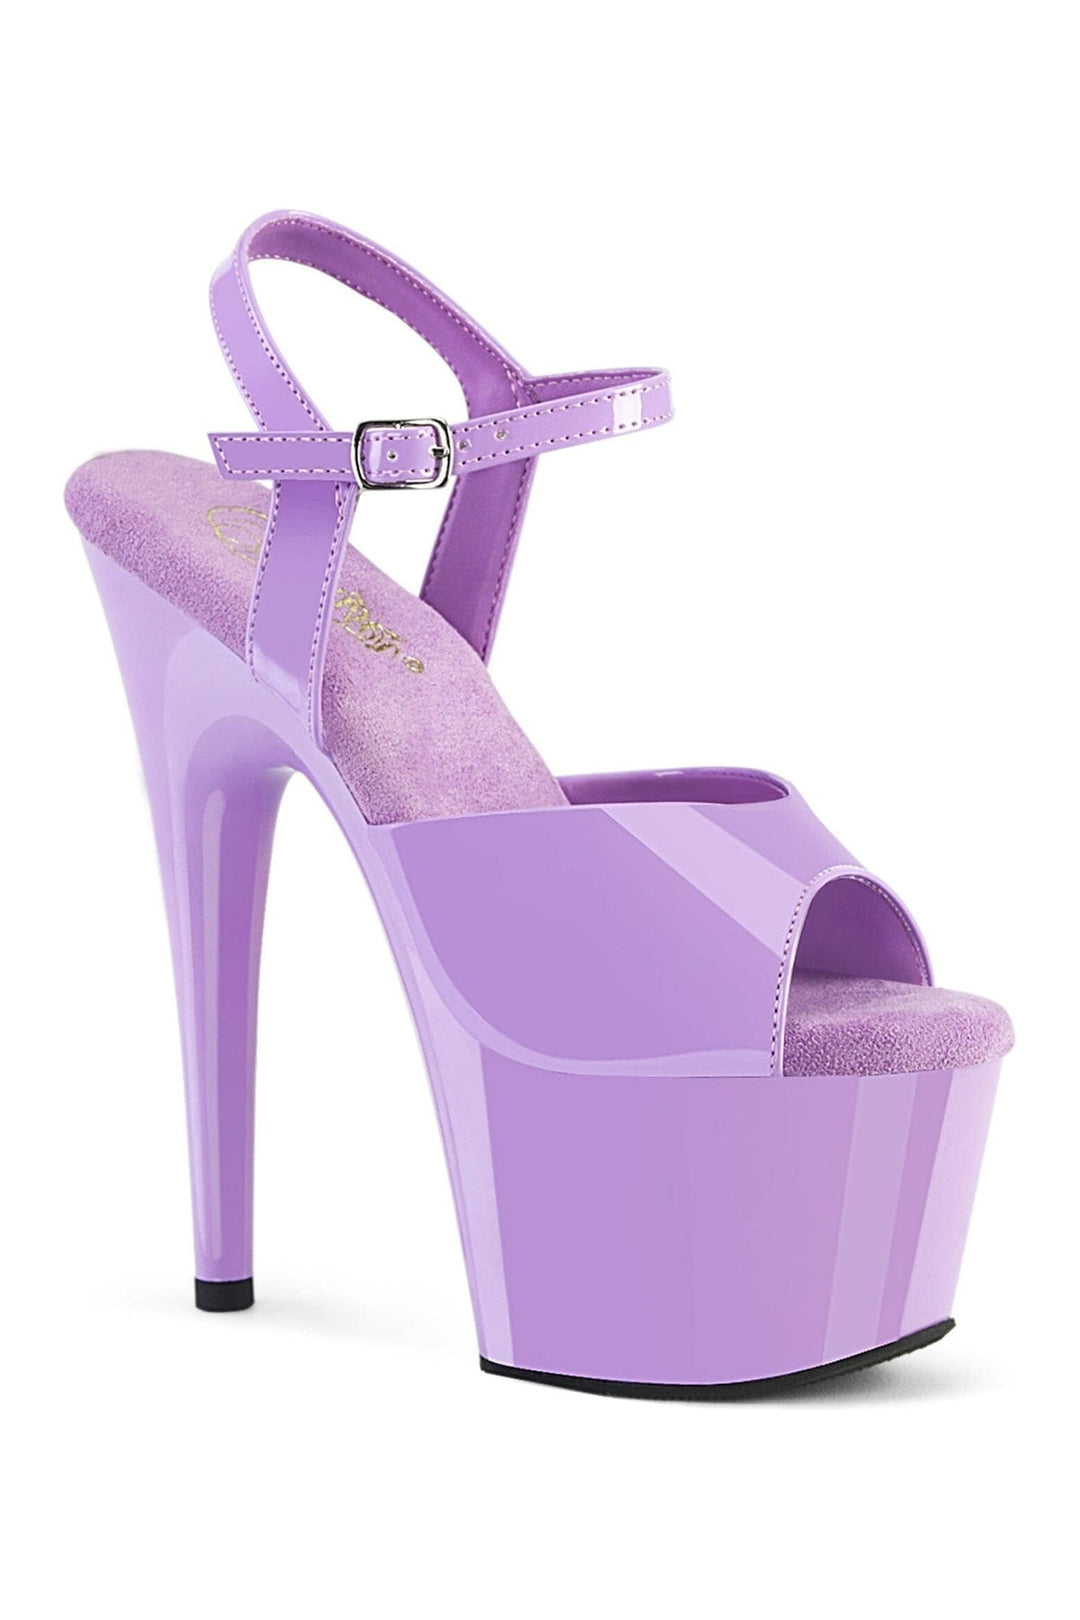 ADORE-709 Purple Patent Sandal-Sandals-Pleaser-Purple-10-Patent-SEXYSHOES.COM